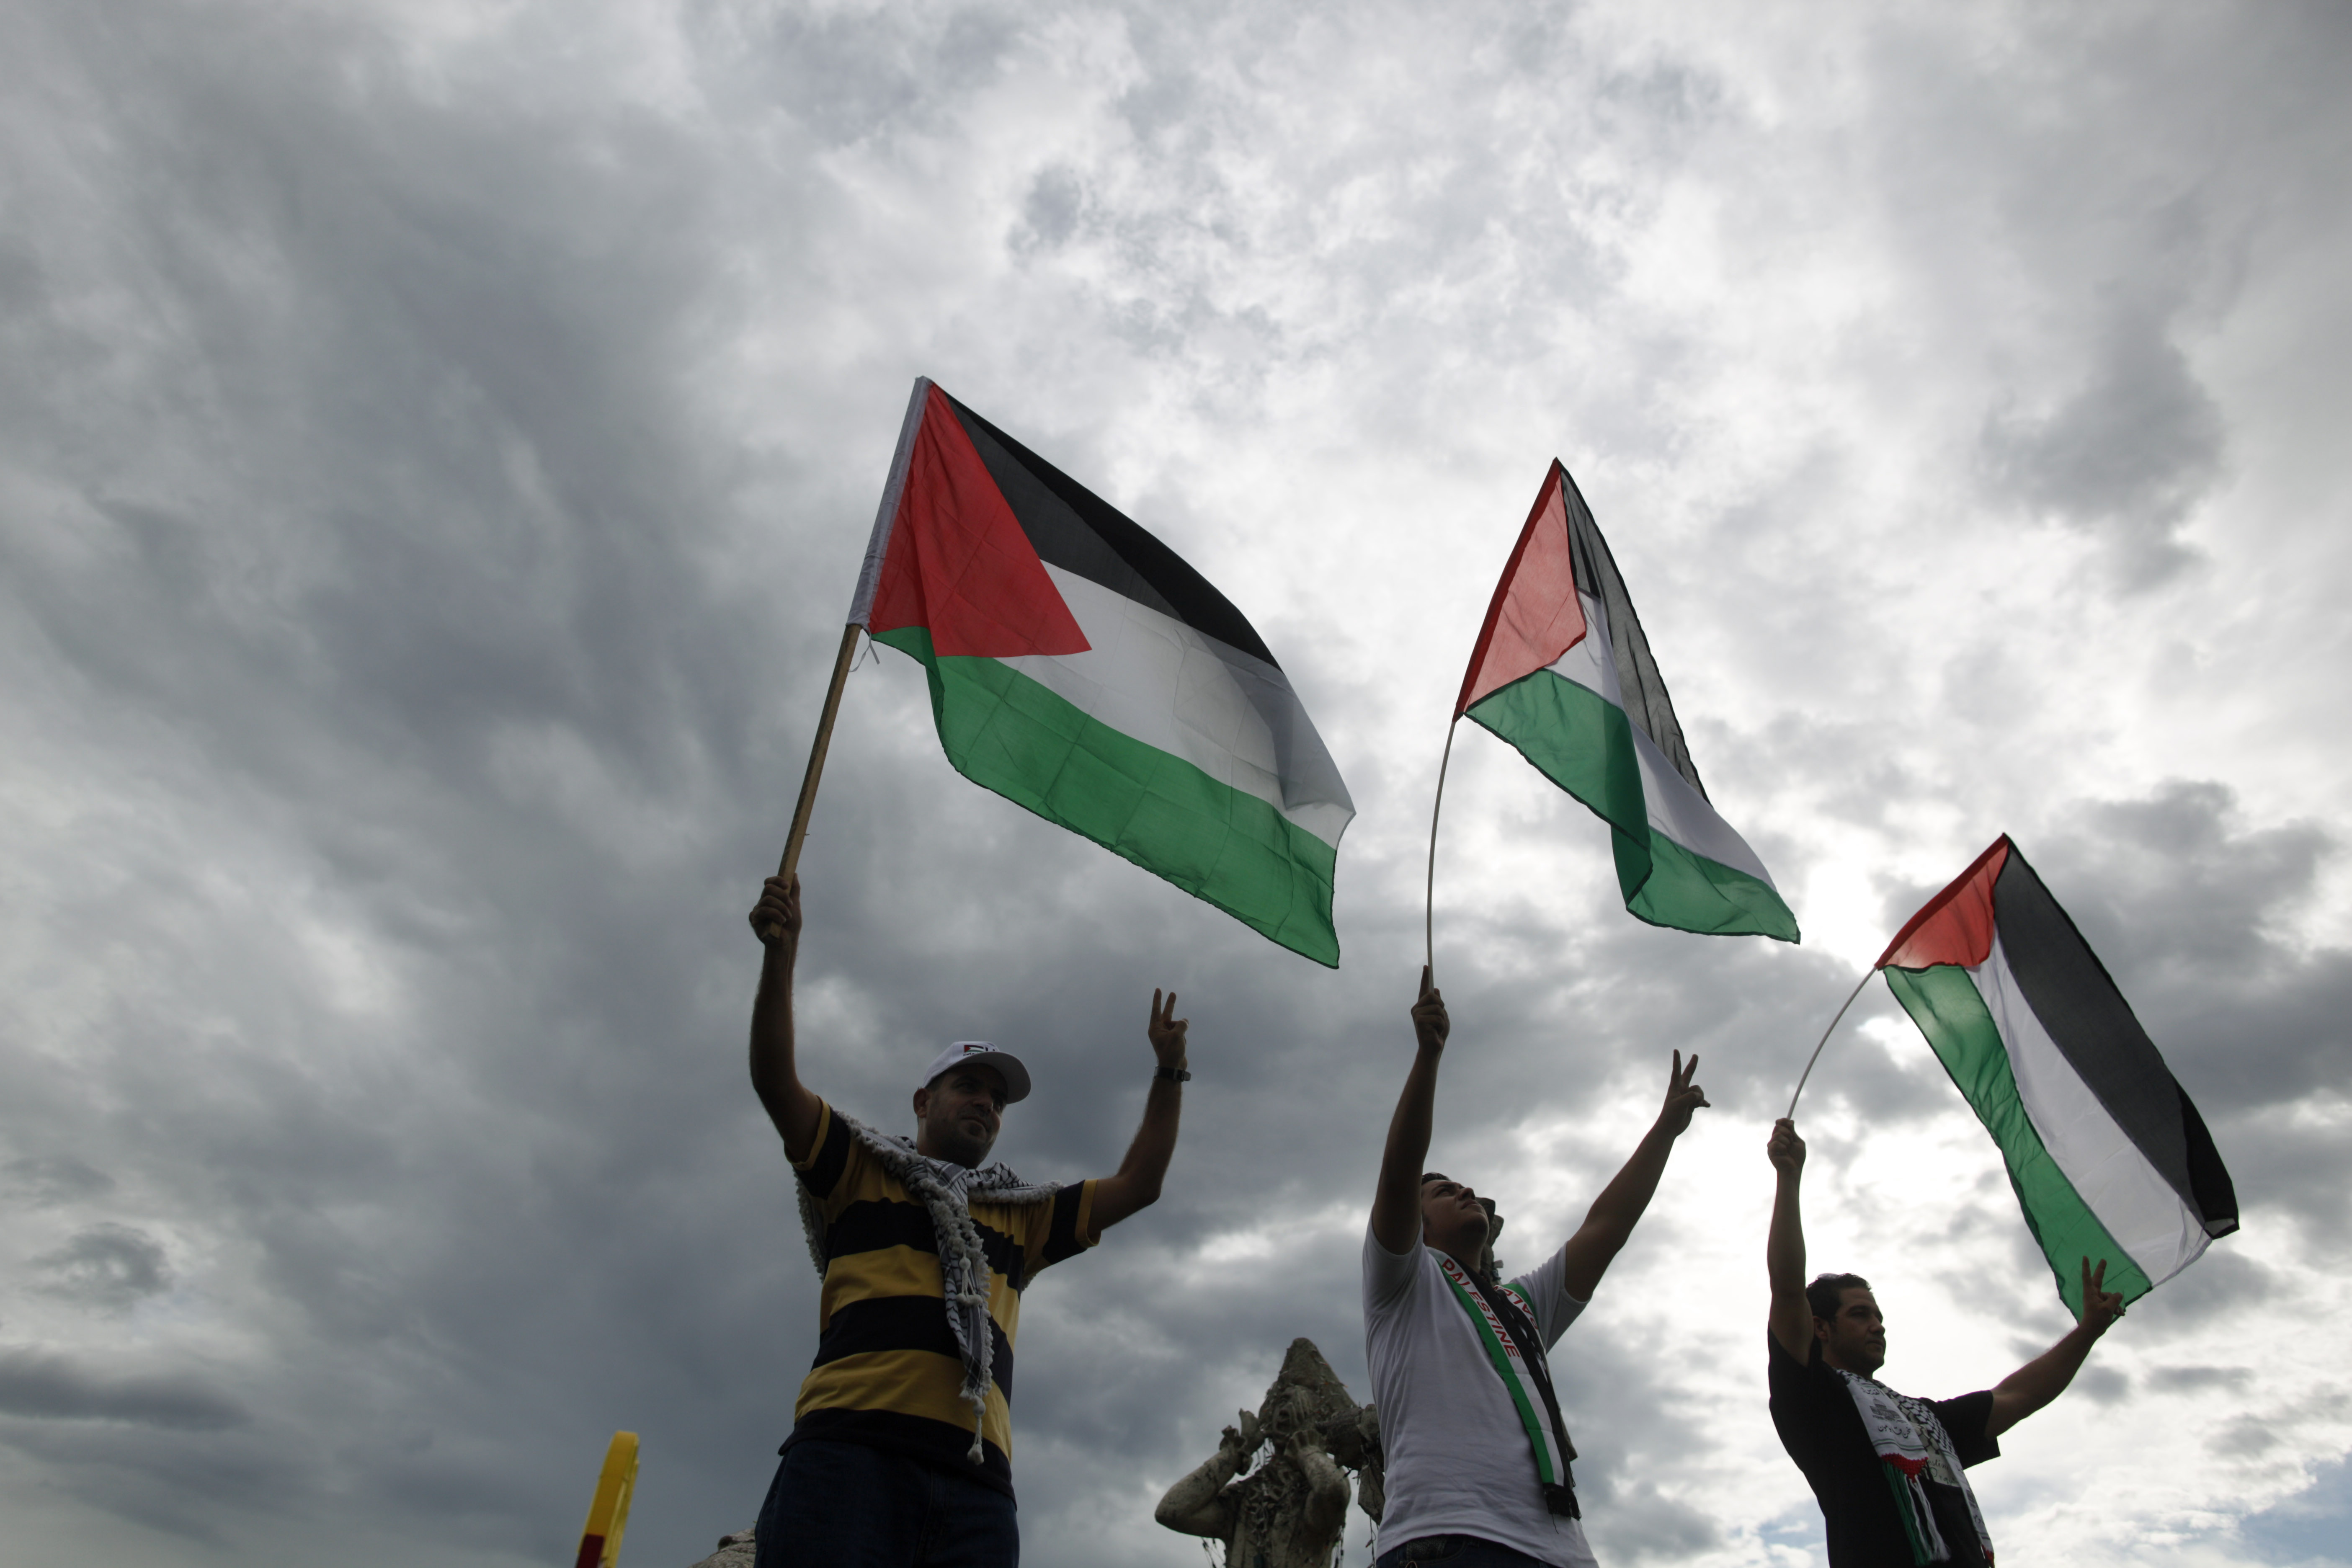 Det finns nu en potentiell riksdagsmajoritet bakom ett erkännande av Palestina. Men Centerpartiet kommer inte att rösta ja om det dyker upp ett förslag i kammaren.